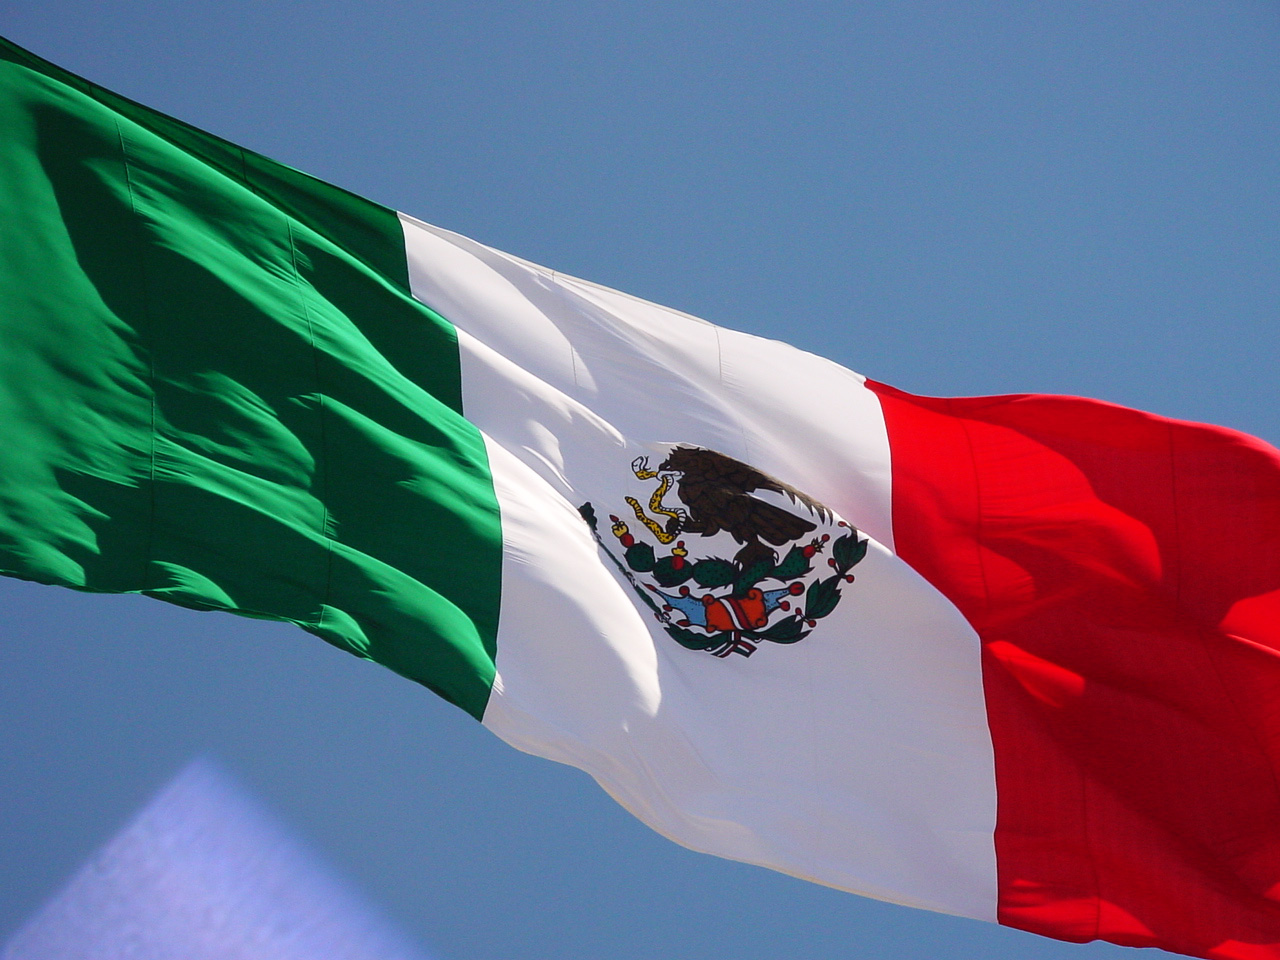 Meksikada 3 günlük matəm elan edilib